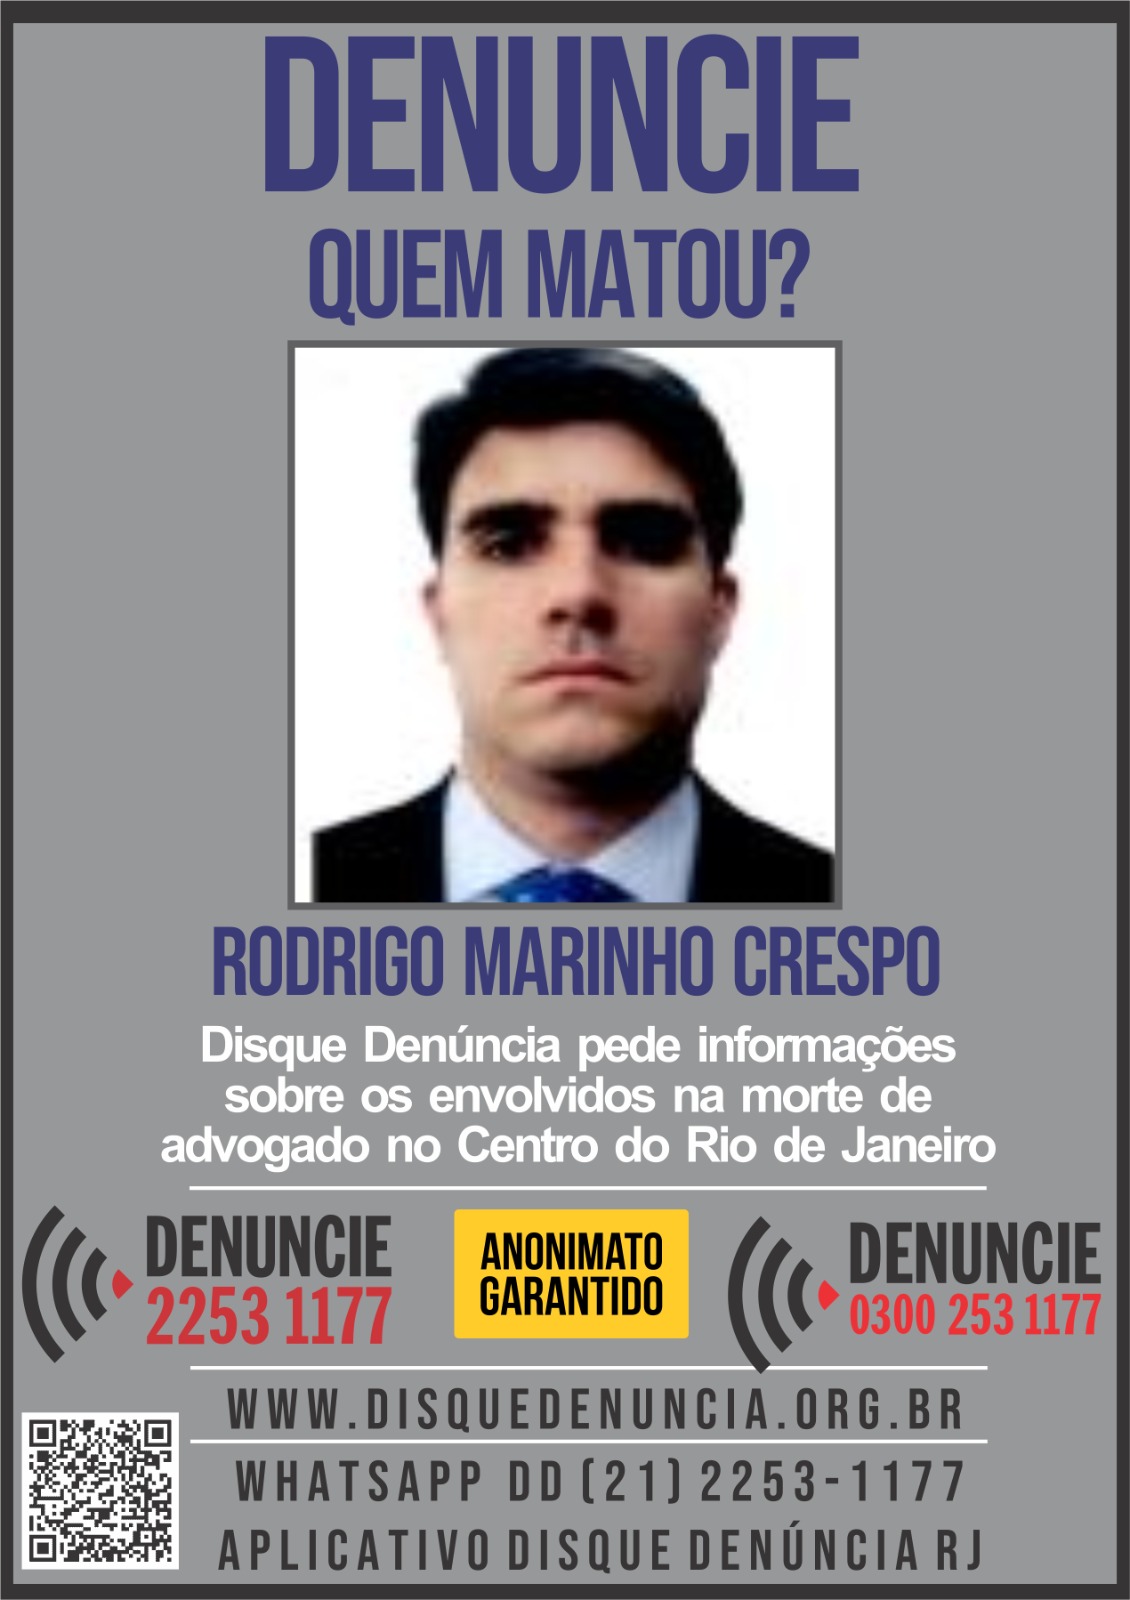 Disque Denúncia pede informações sobre envolvidos na morte de advogado no Centro do Rio